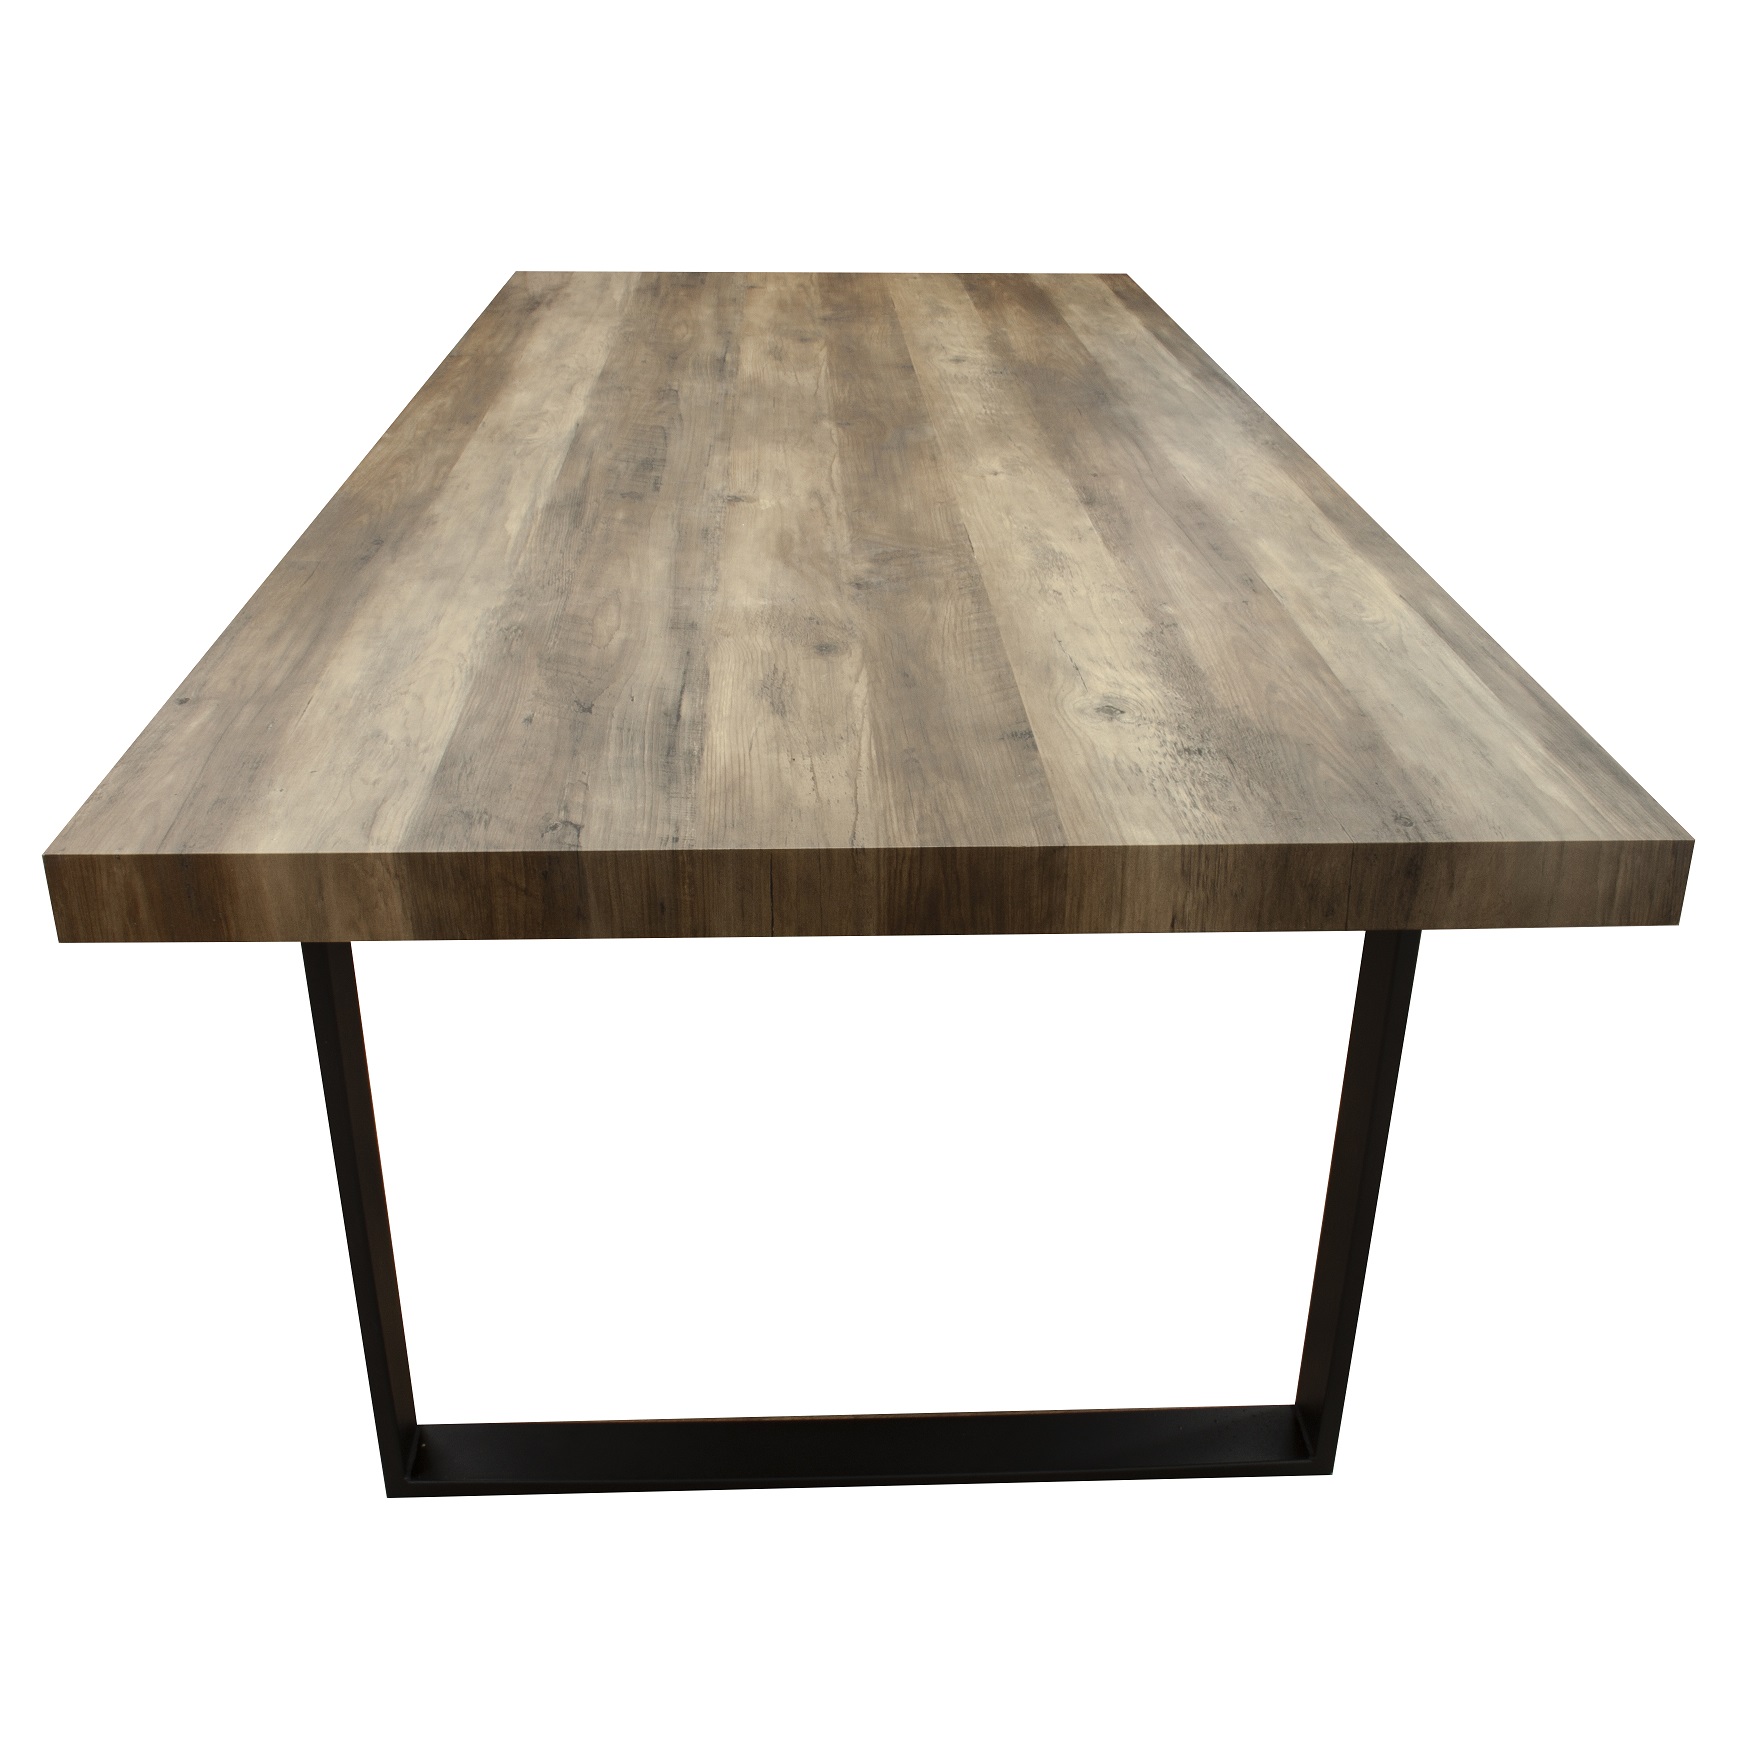 Esszimmertisch Esstisch Kufentisch Holztisch Tisch mit Massive Tischplatte und Kufen - Akazie + Schwarze Kufen